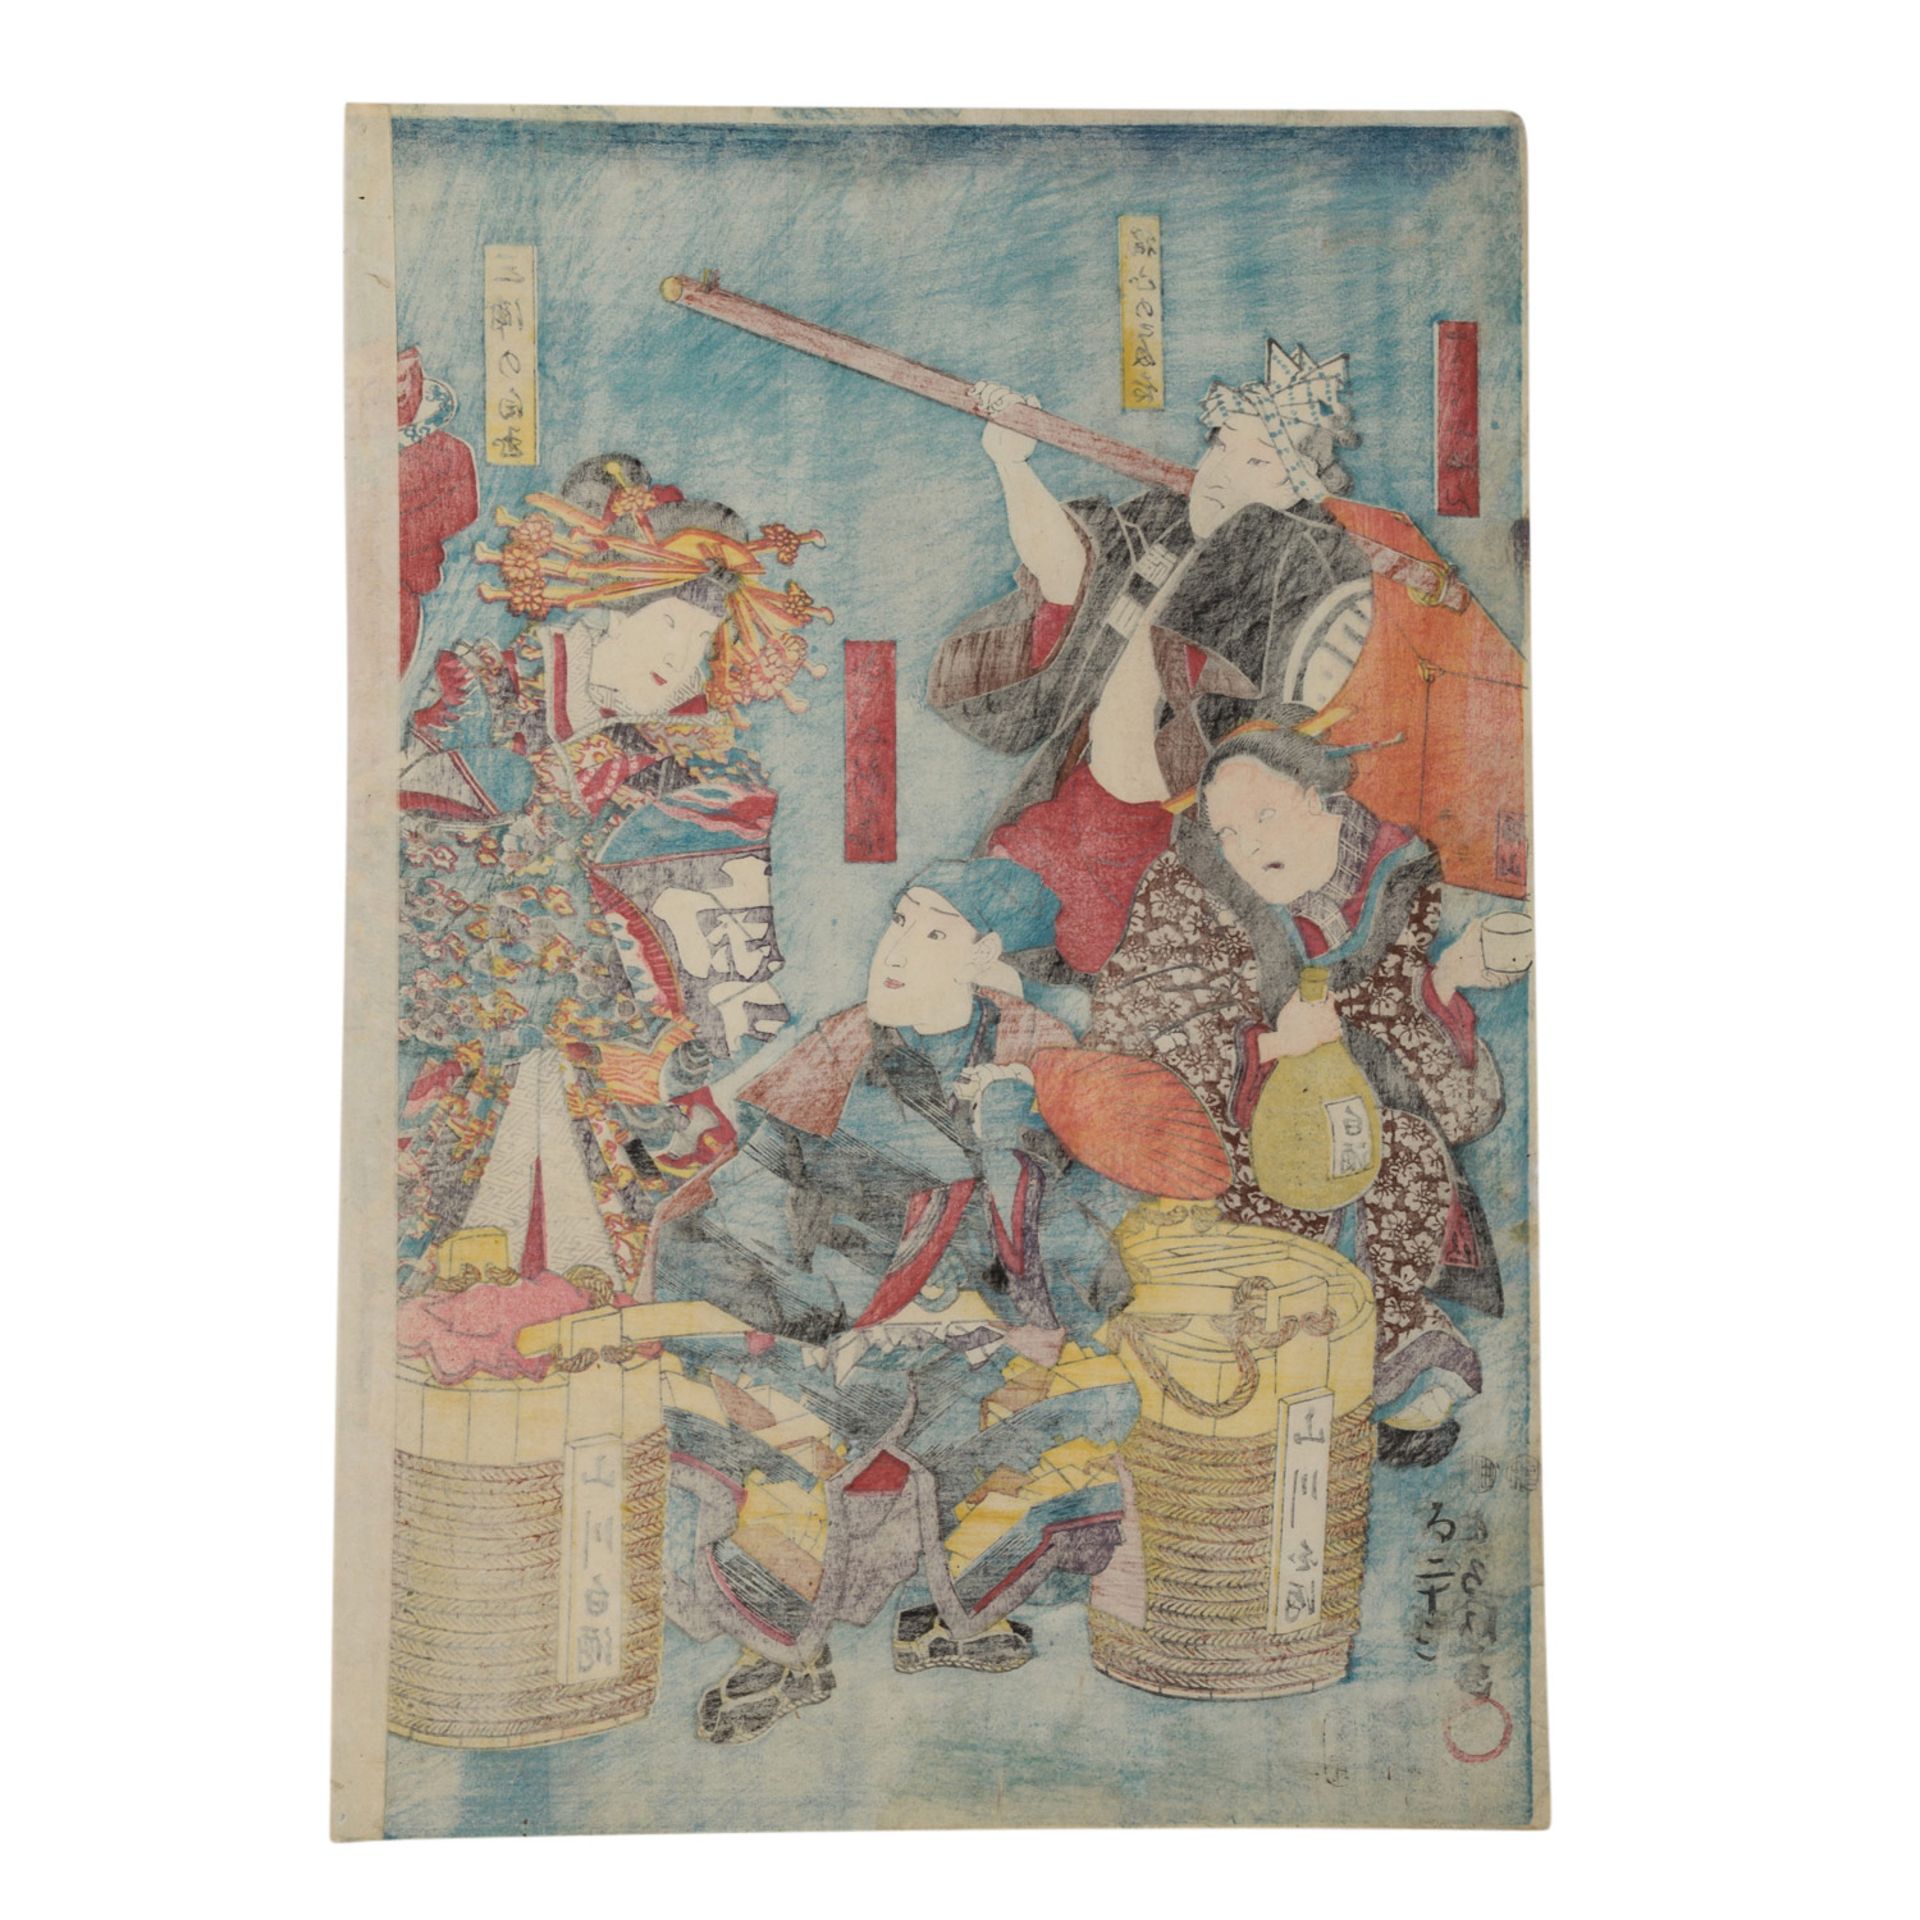 Neun Farbholzschnitte, JAPAN von UTAGAWA TOYOKUNI (1769-1825). - Bild 4 aus 11